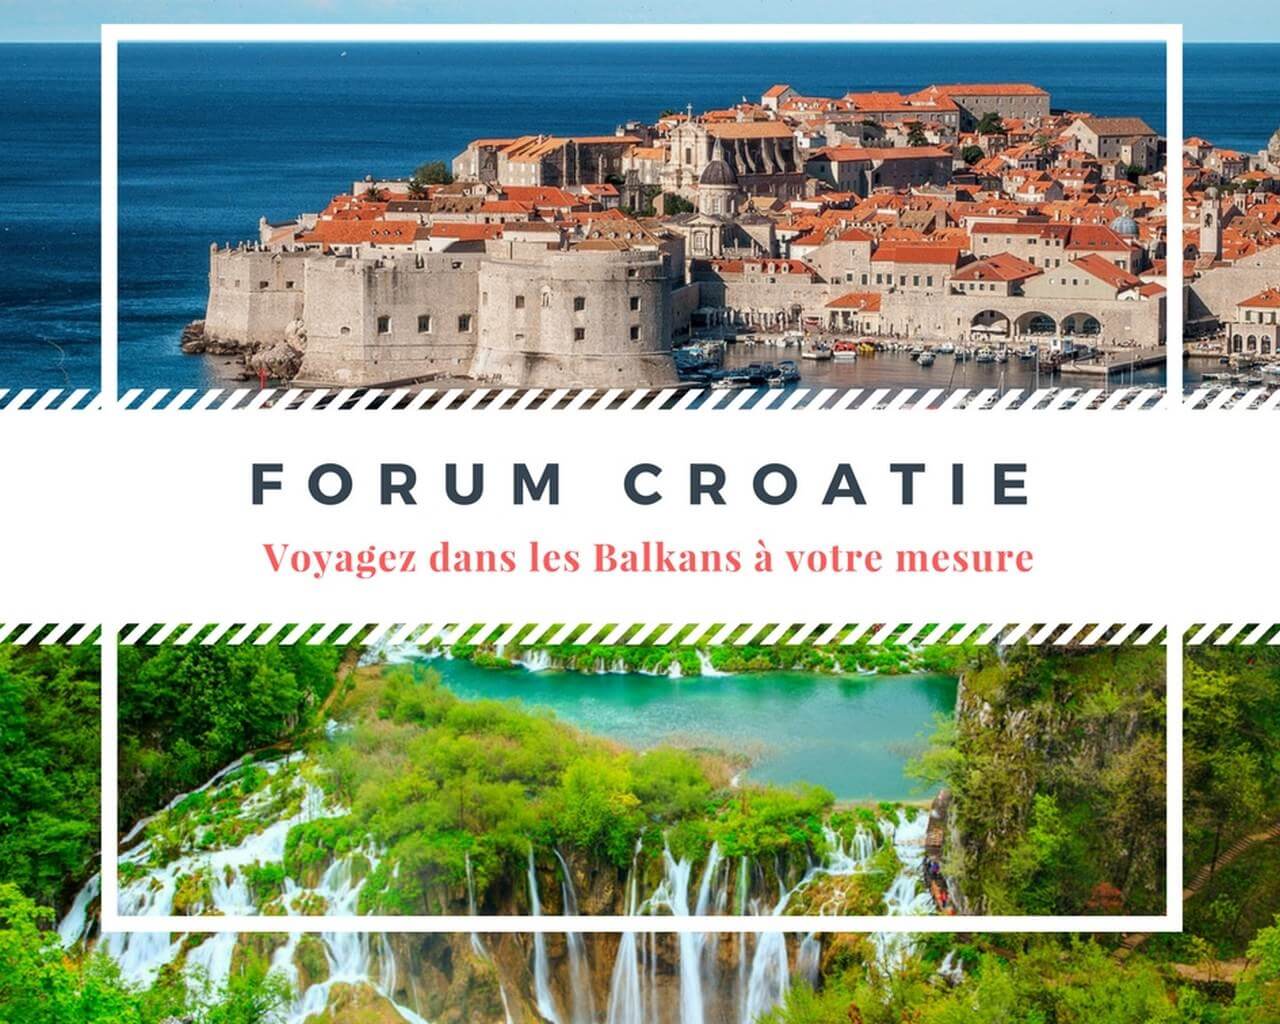 Forum croatie